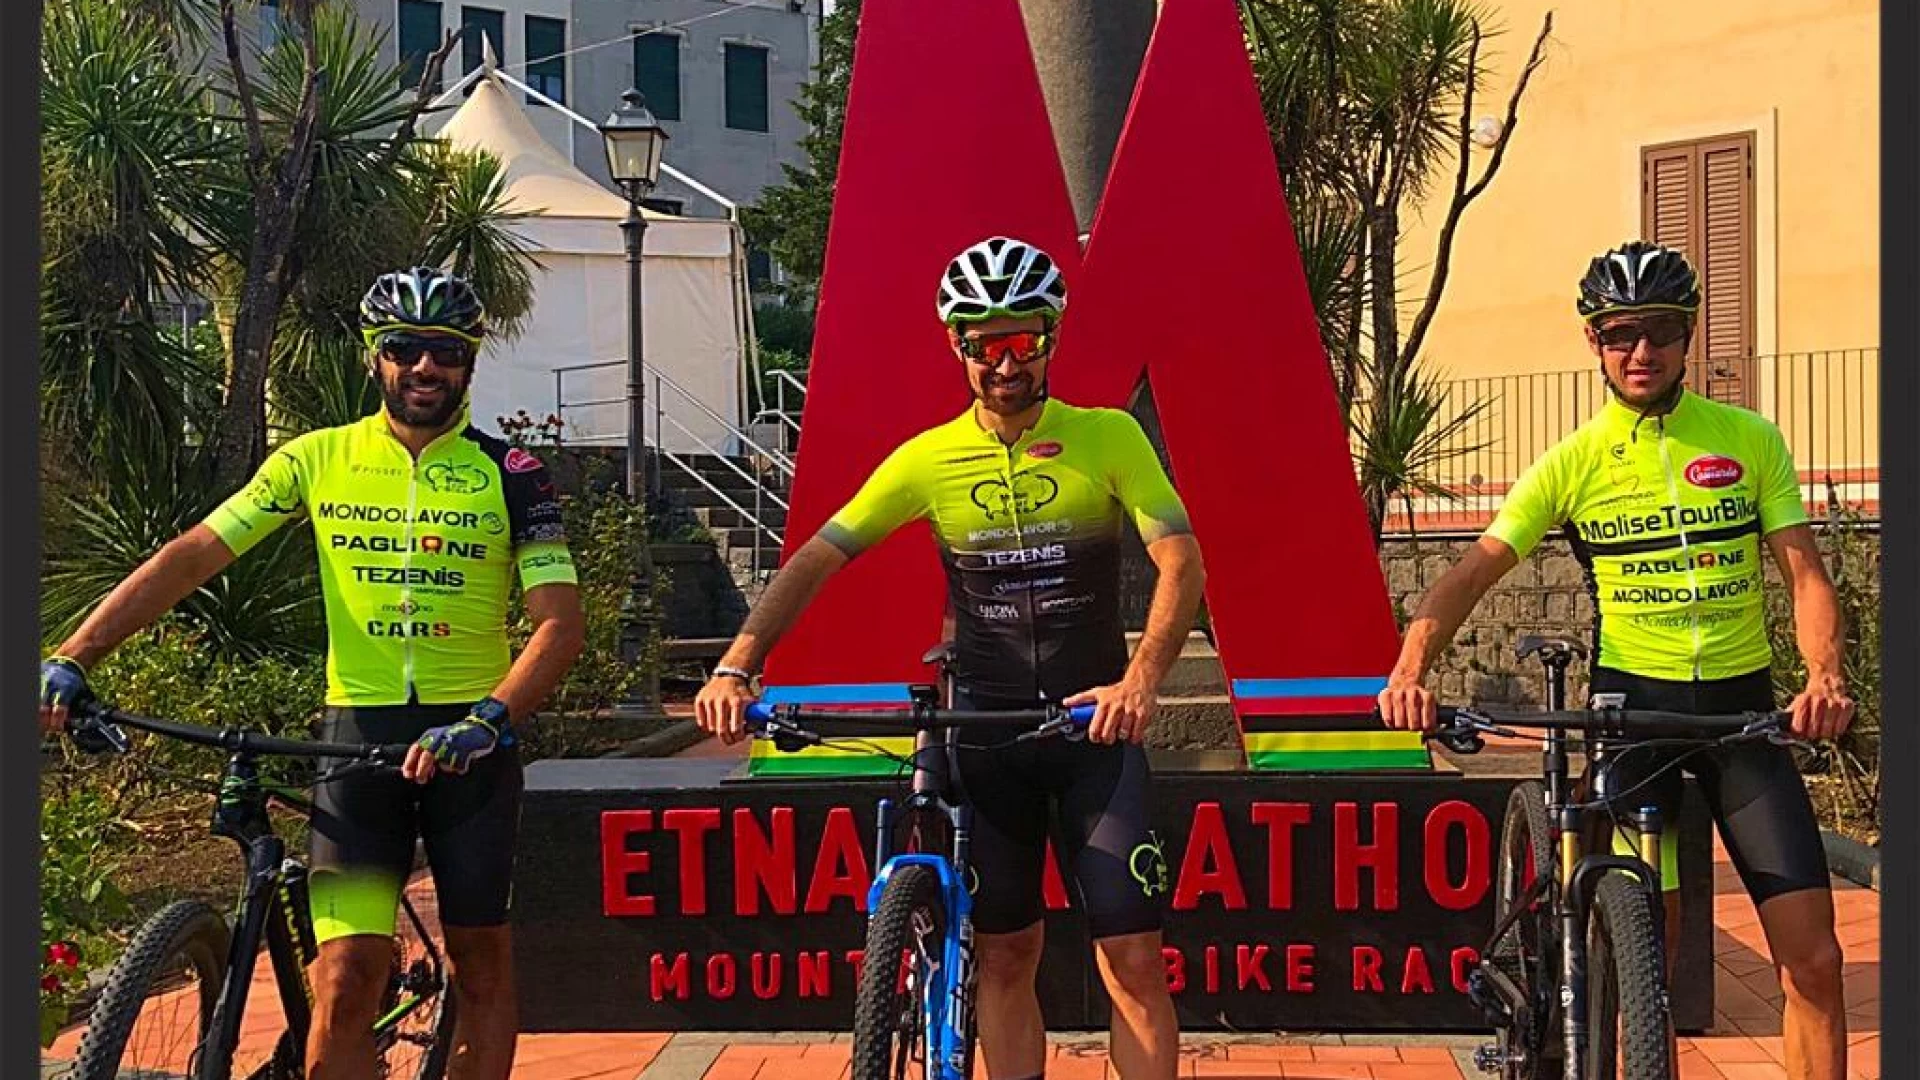 Ciclismo: la Molise Tour Bike si fa onore all'Etna Marathon